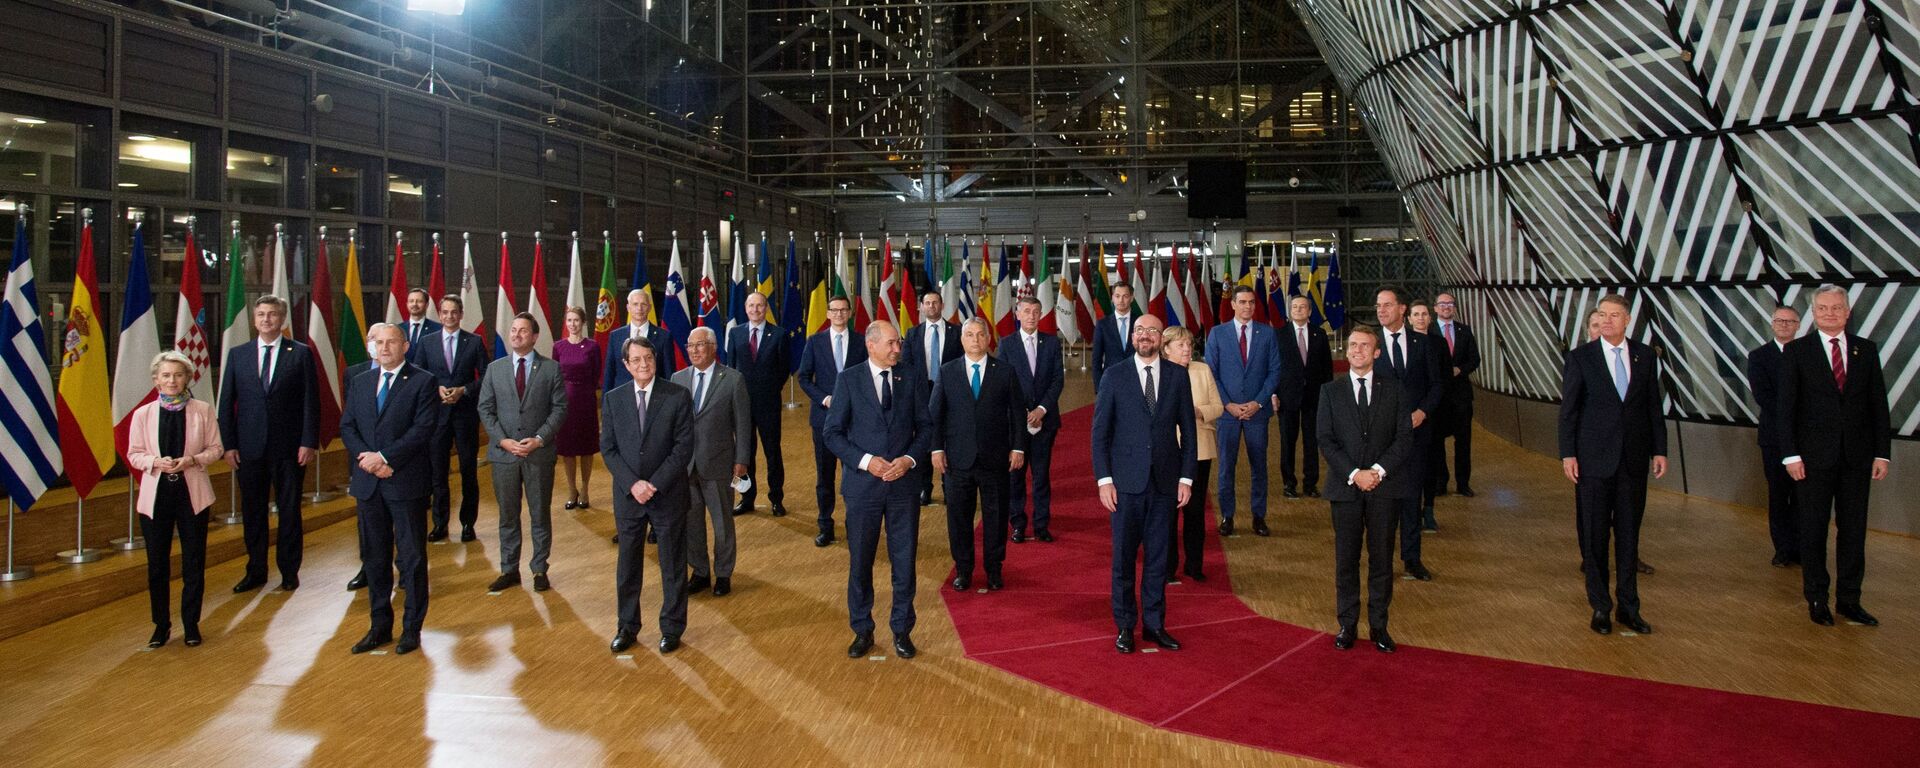 قمة زعماء الدول الأعضاء في الاتحاد الأوروبي في بروكسل، بلجيكا 21 أكتوبر 2021 - سبوتنيك عربي, 1920, 08.11.2021